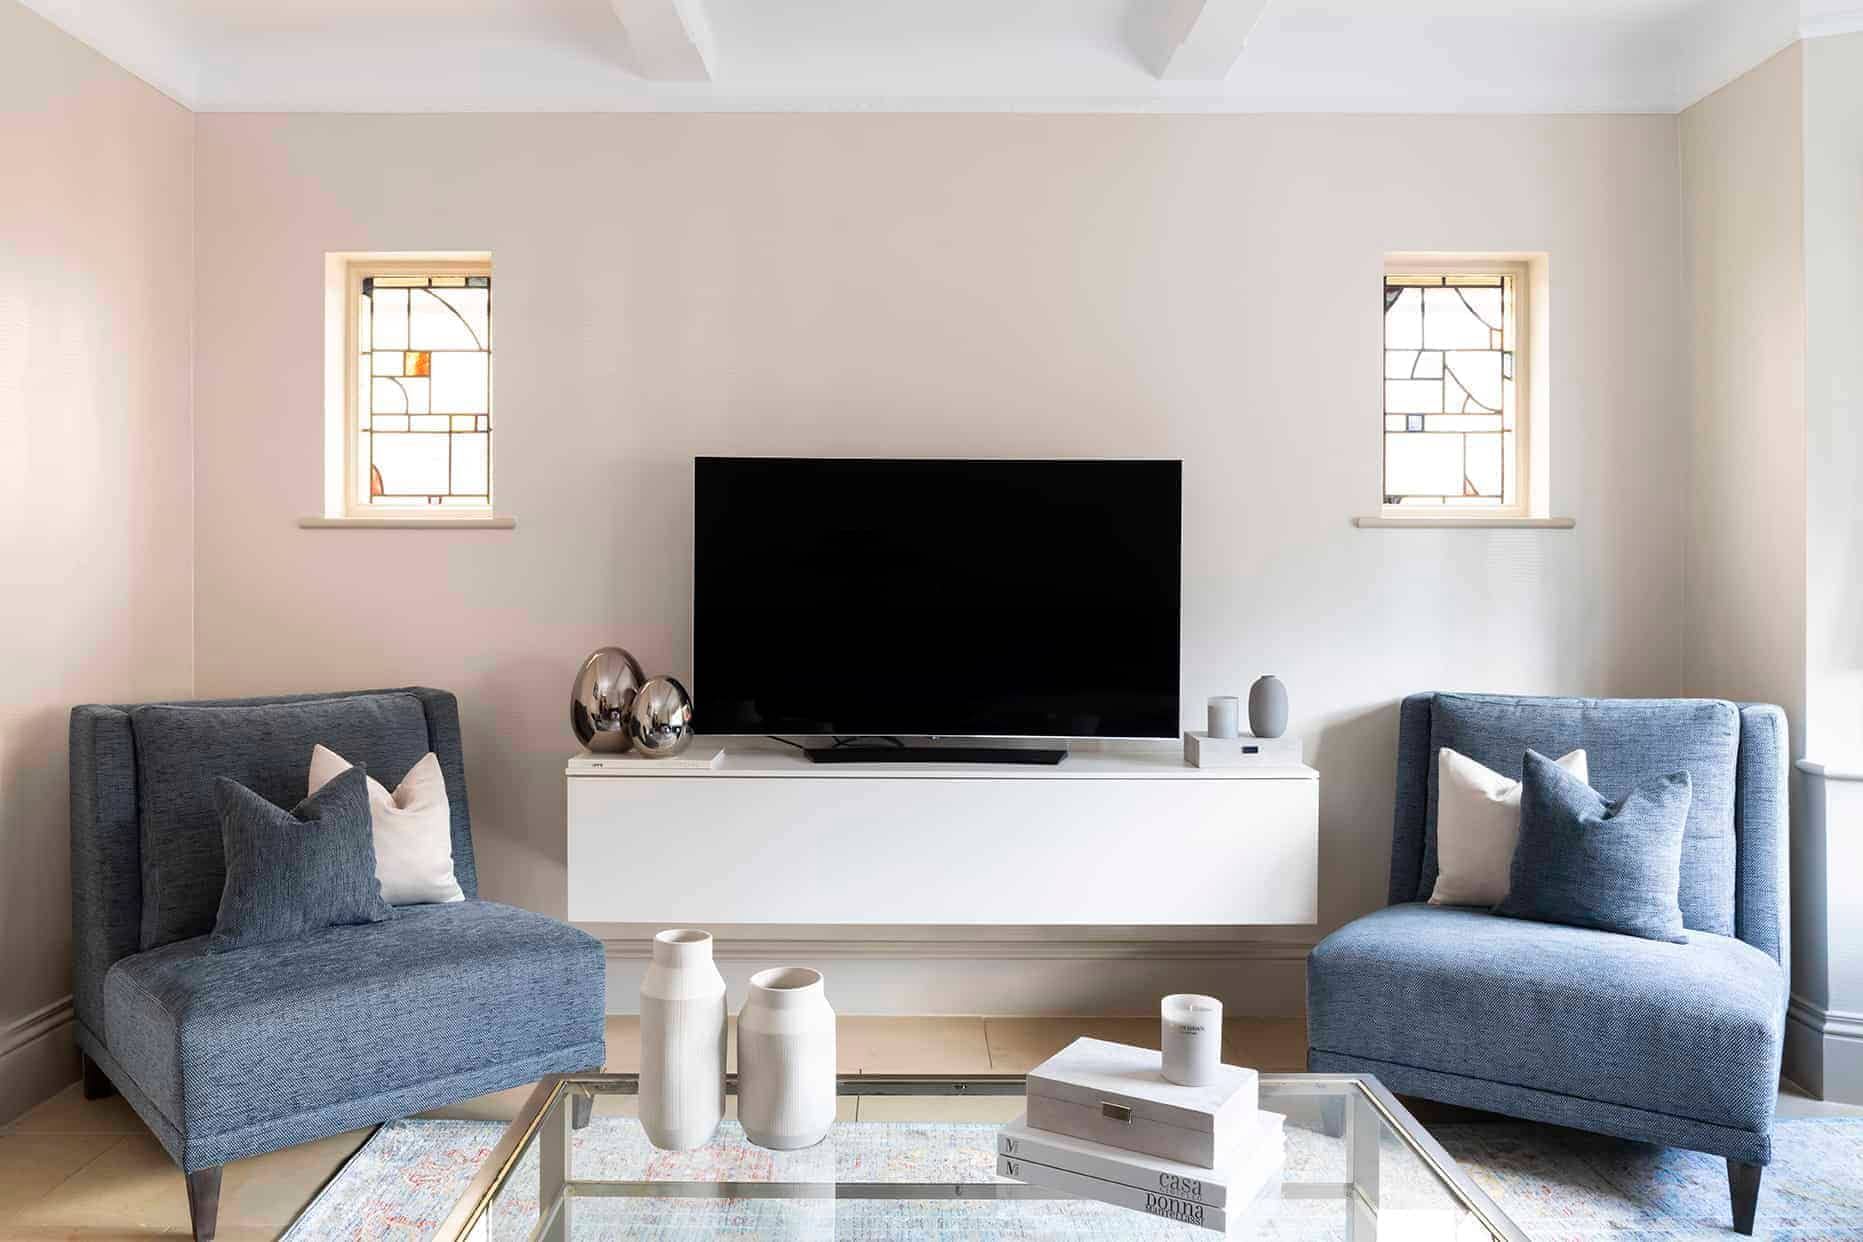 Essex Interior Design for a TV Room